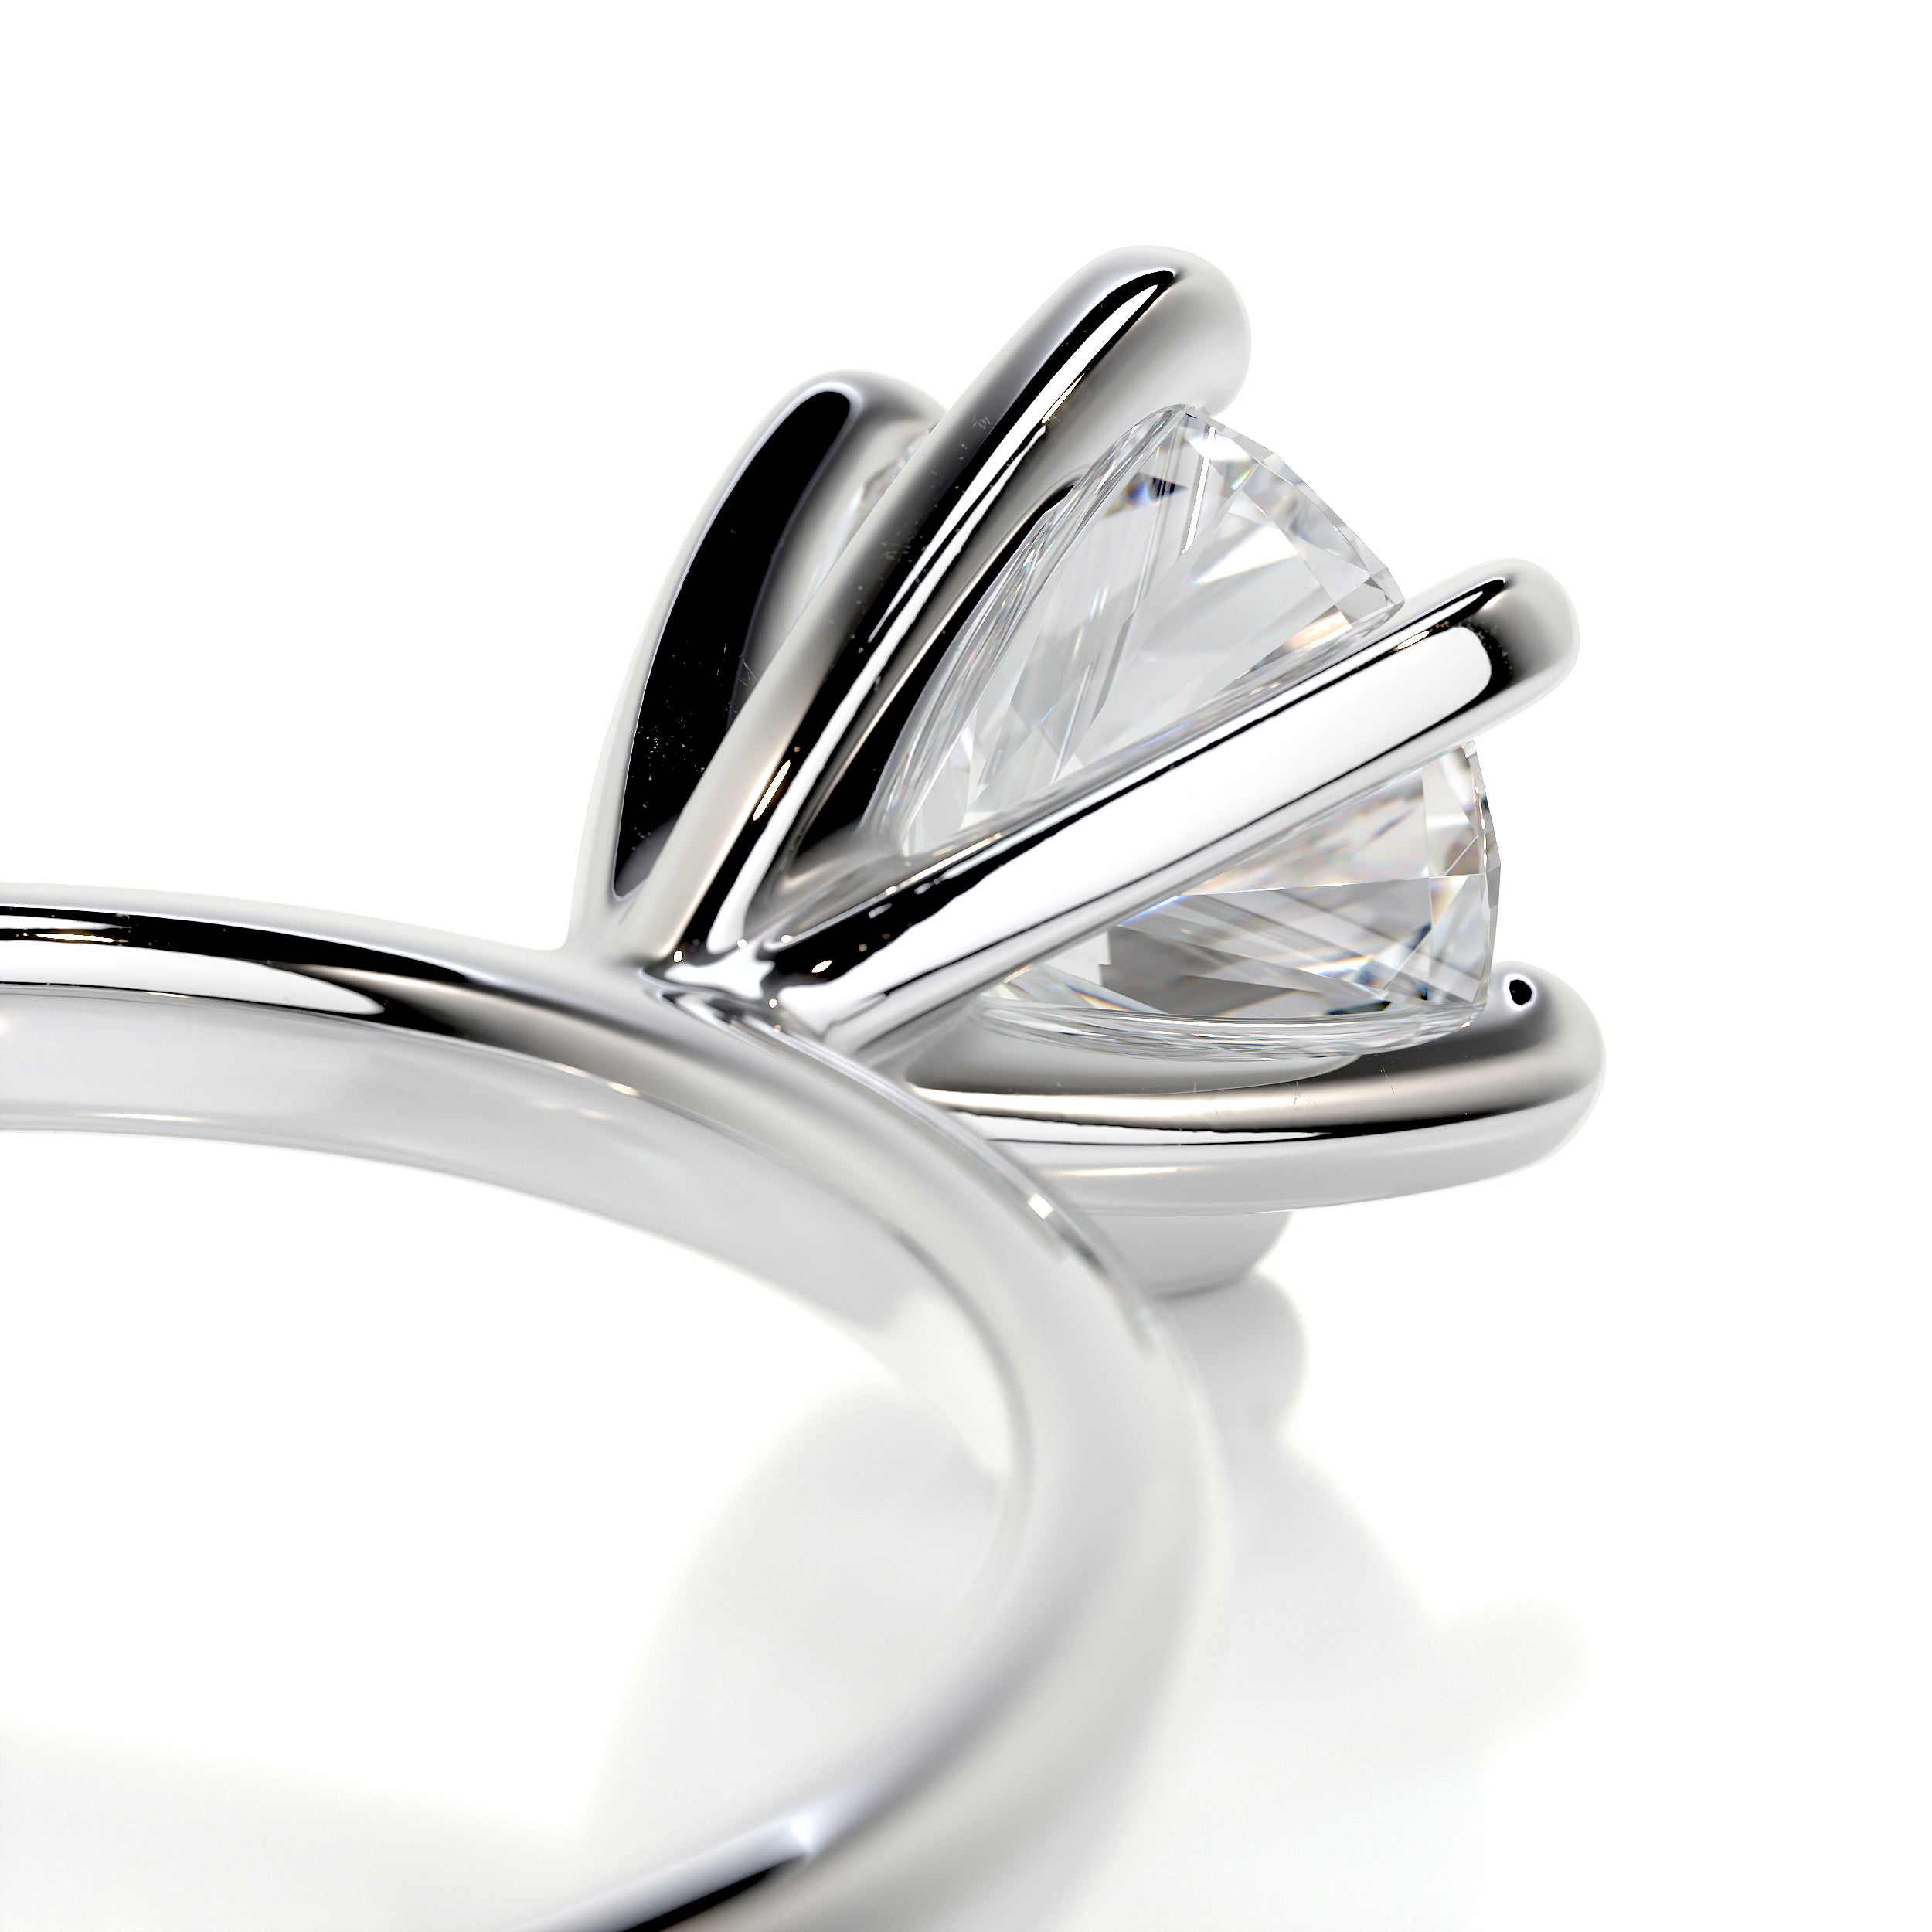 Samantha Diamond Engagement Ring   (0.75 Carat) -14K White Gold